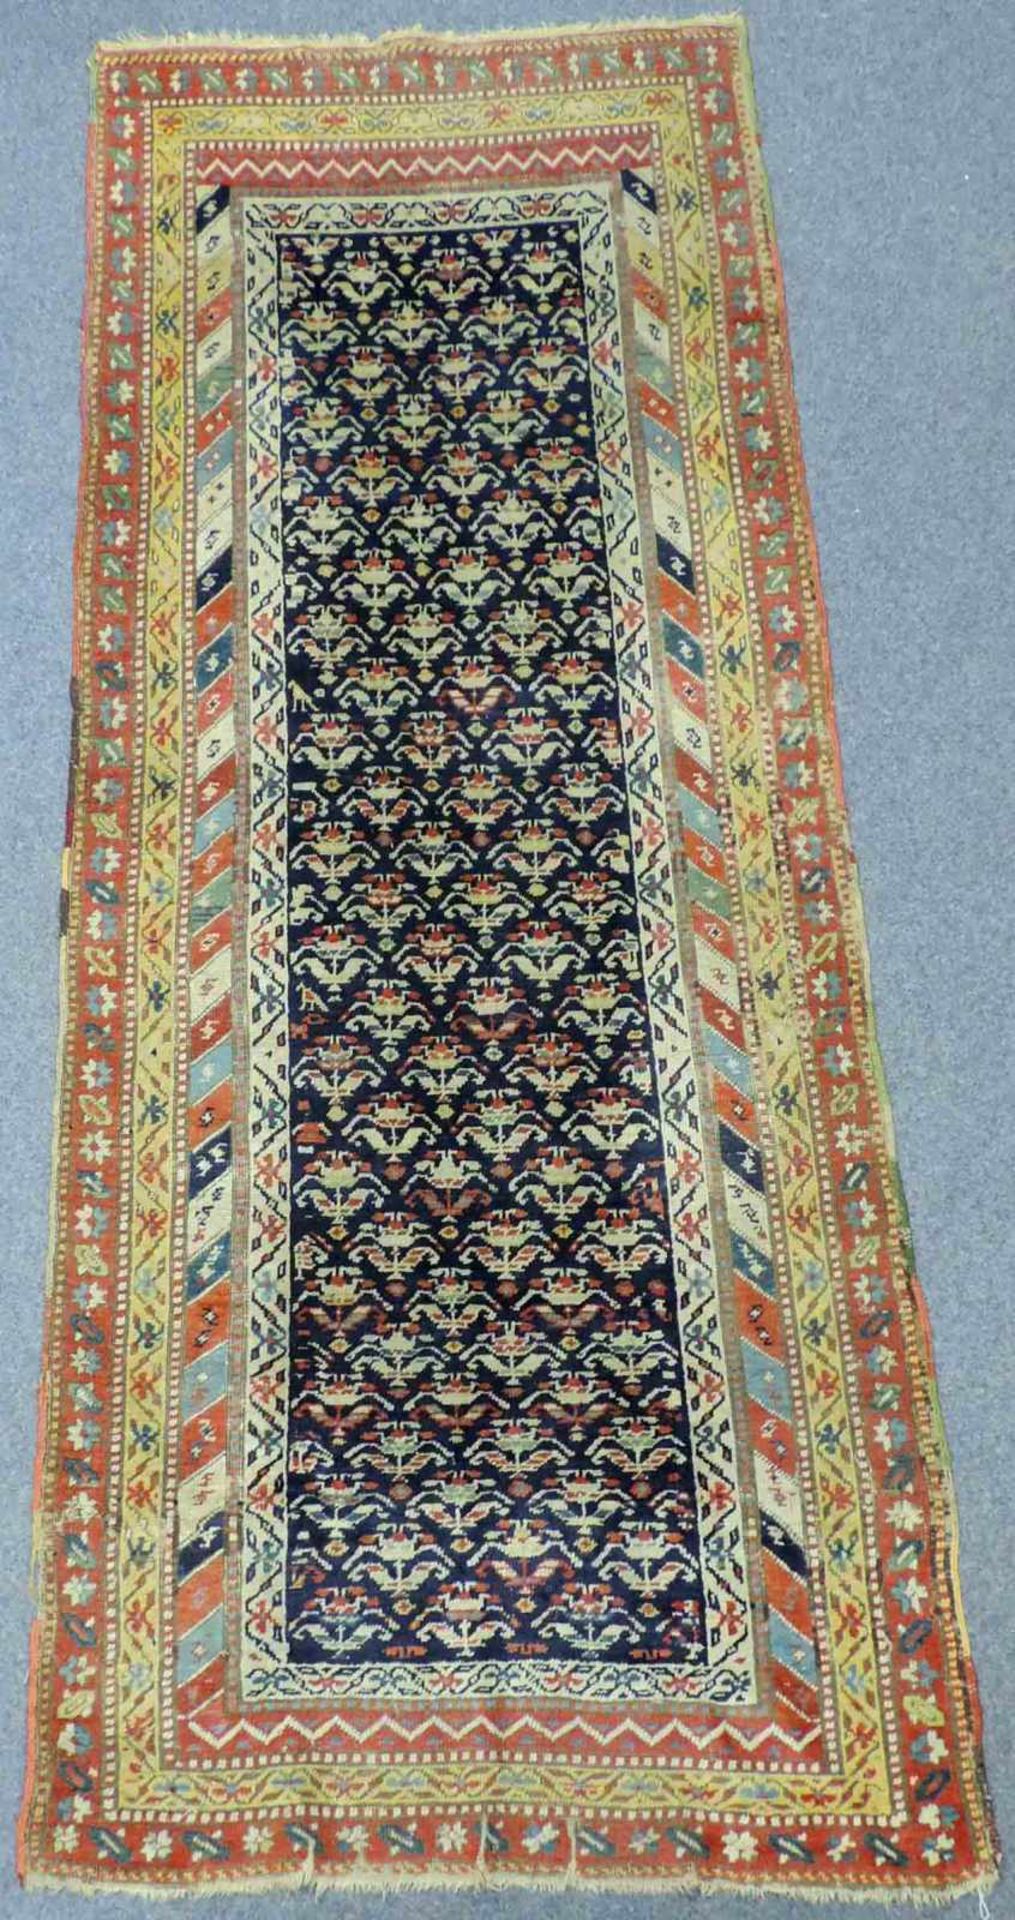 Azeri Teppich, Ost - Kaukasus, antik, Mitte 19. Jahrhundert. 264 cm x 115 cm. Handgeknüpft. Wolle